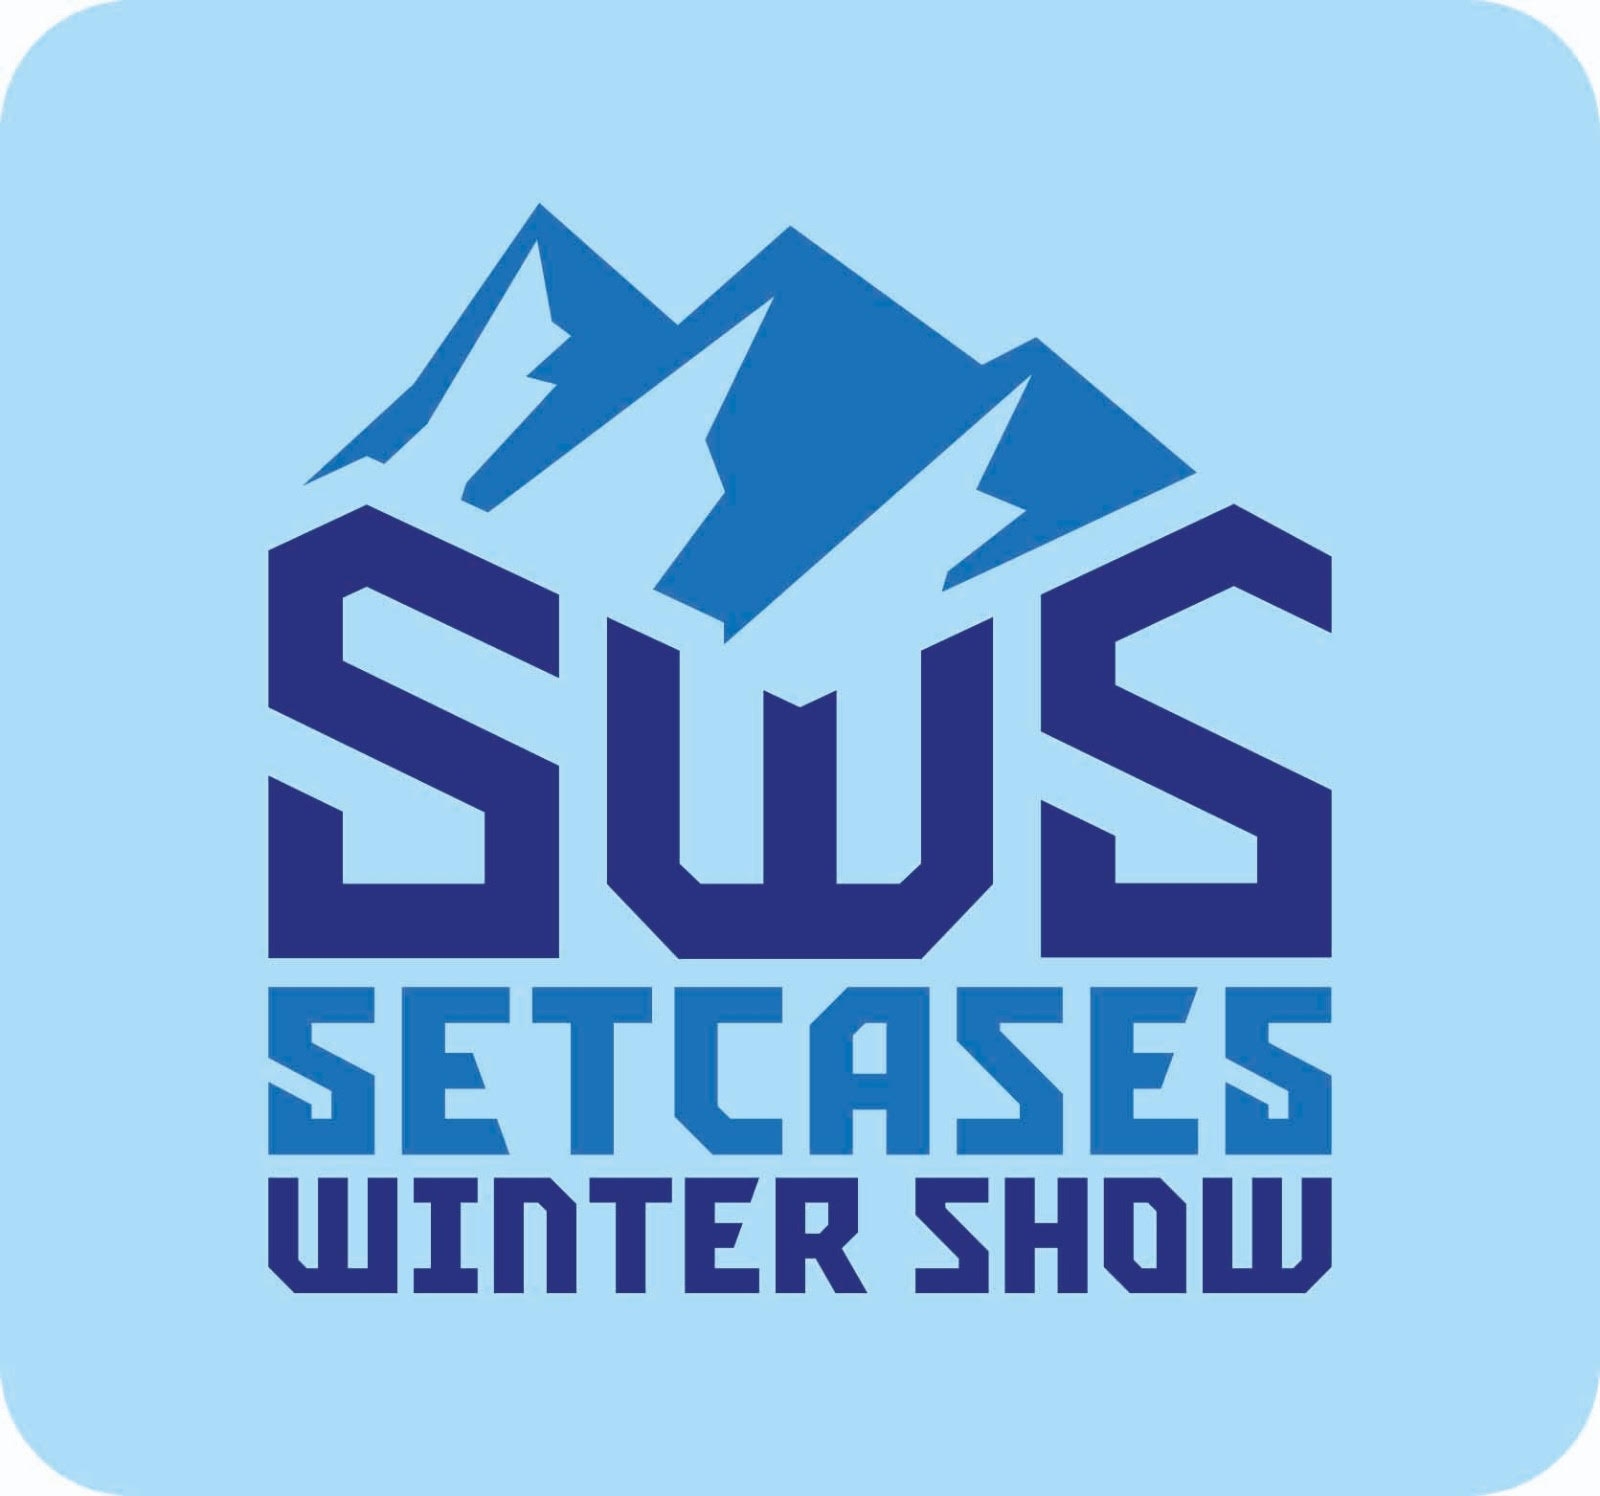 Logotip Setcases Winter Show